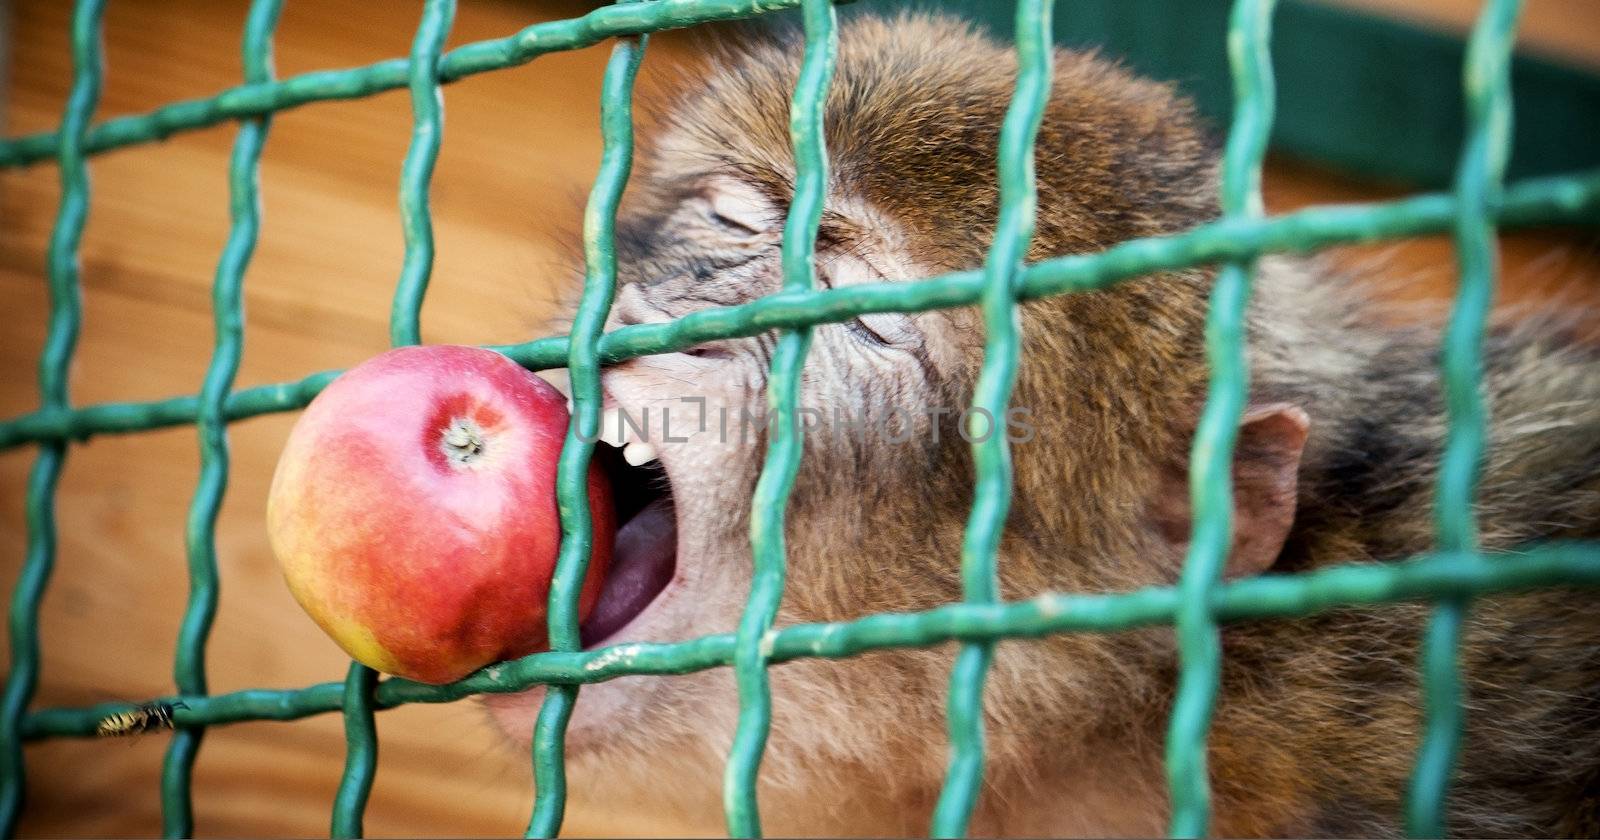 monkey eating an apple by GekaSkr